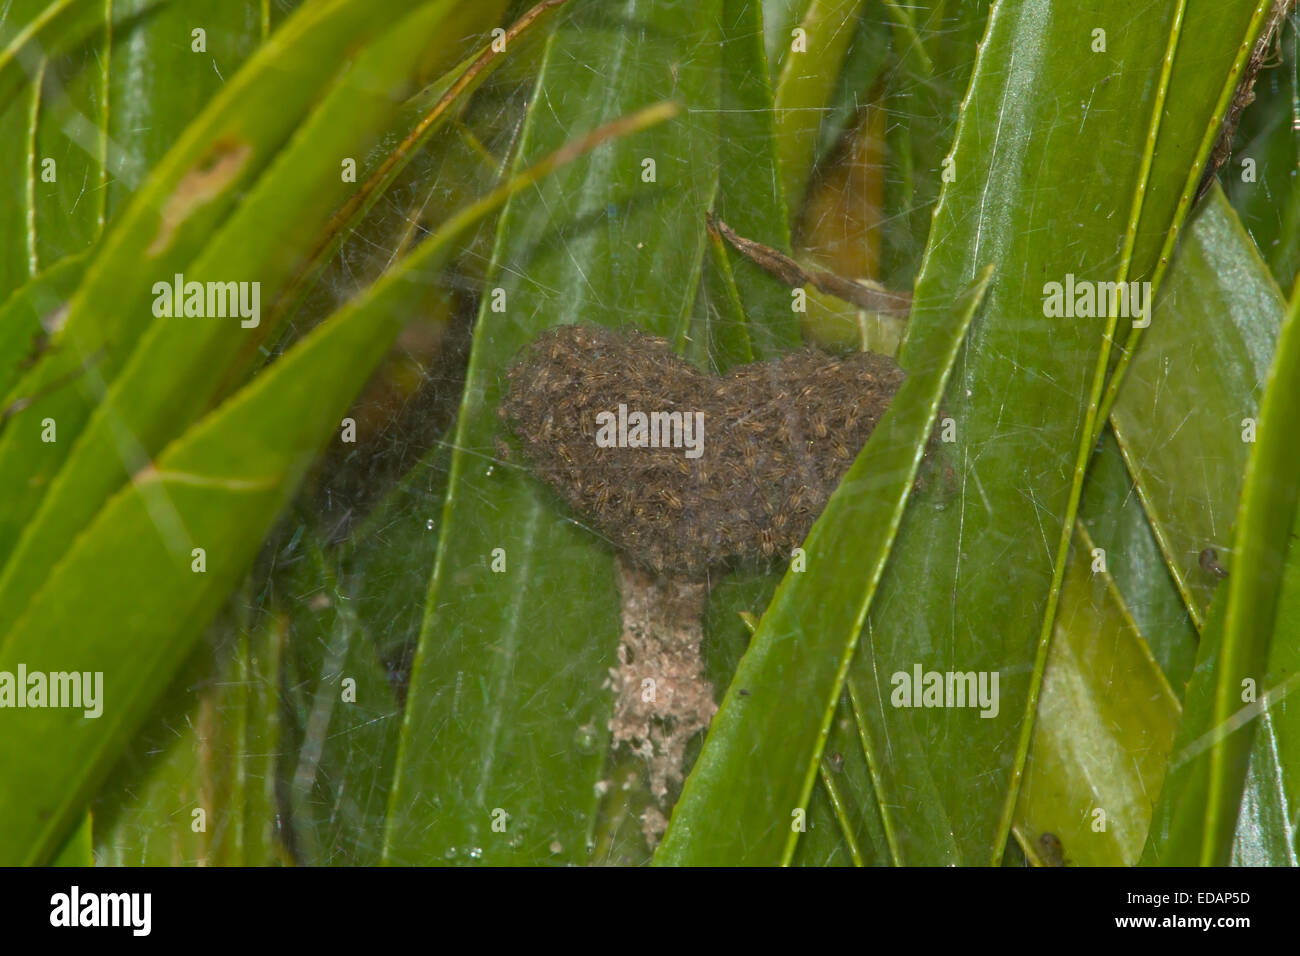 Fen Raft Spider - Dolomedes plantarius- spiderling nursery Stock Photo